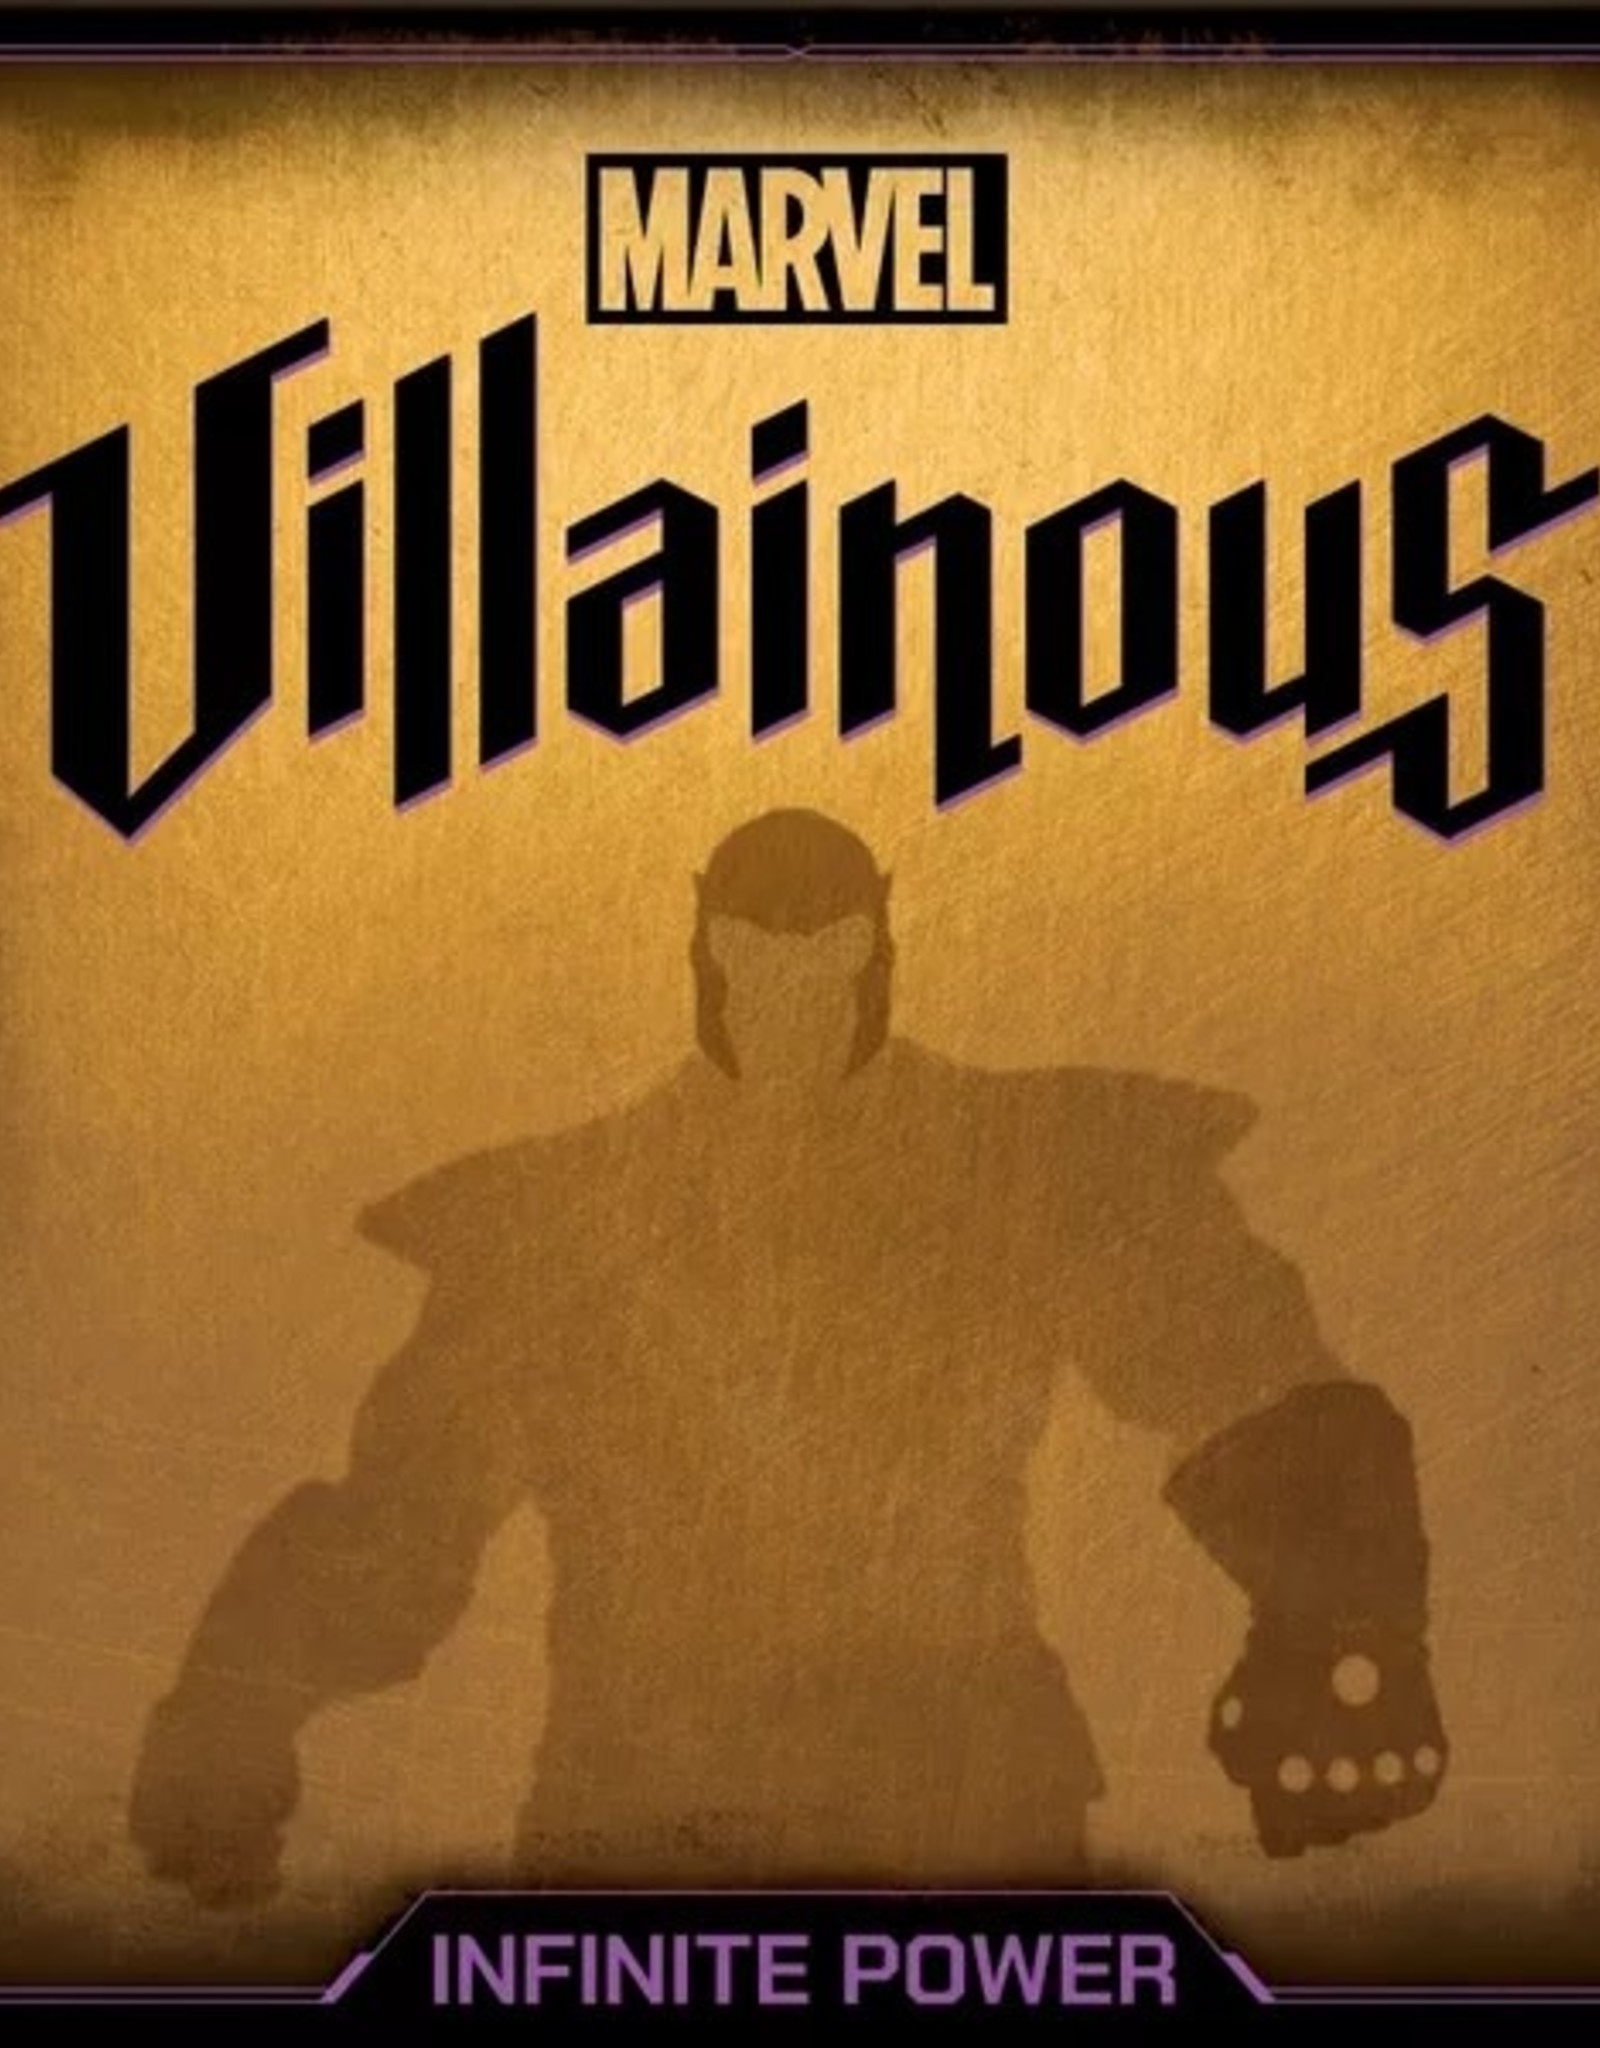 Ravensburger Marvel Villainous - Infinite Power!